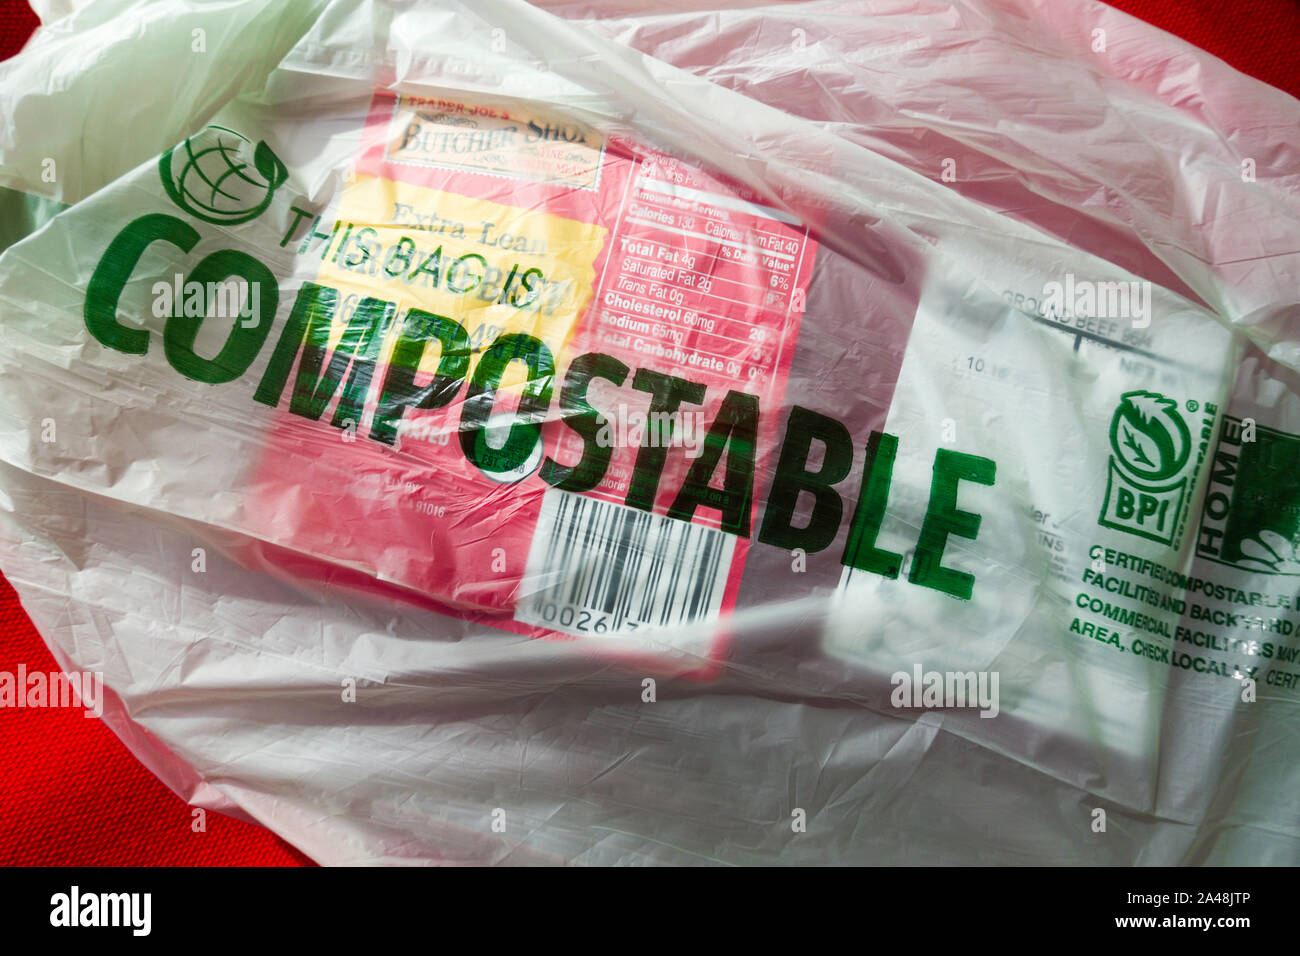 Sacchetto compostabile da un negozio di alimentari, STATI UNITI D'AMERICA Foto Stock